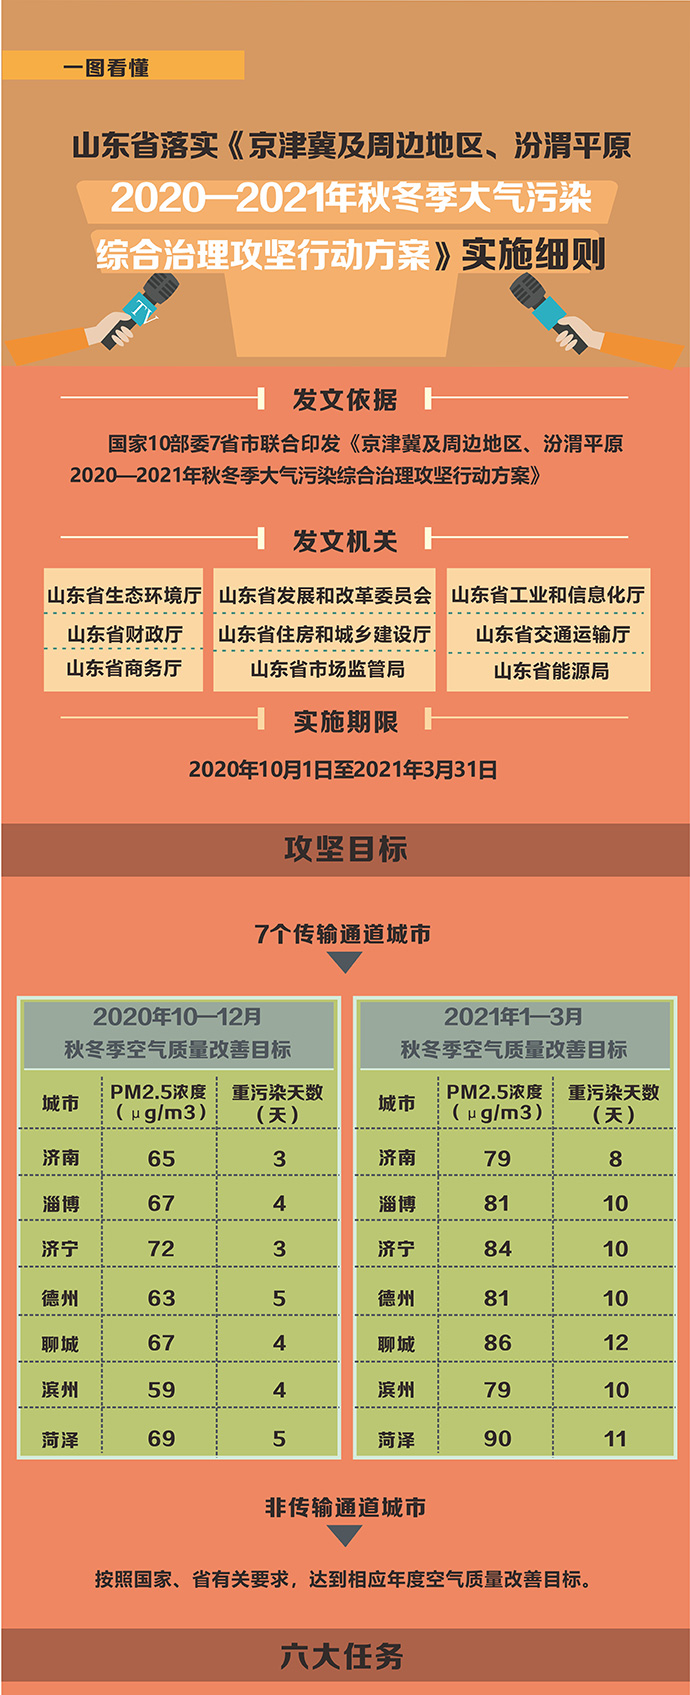 《京津冀及周边地区、汾渭平原2020—2021年秋冬季大气污染综合治理攻坚行动方案》实施细则